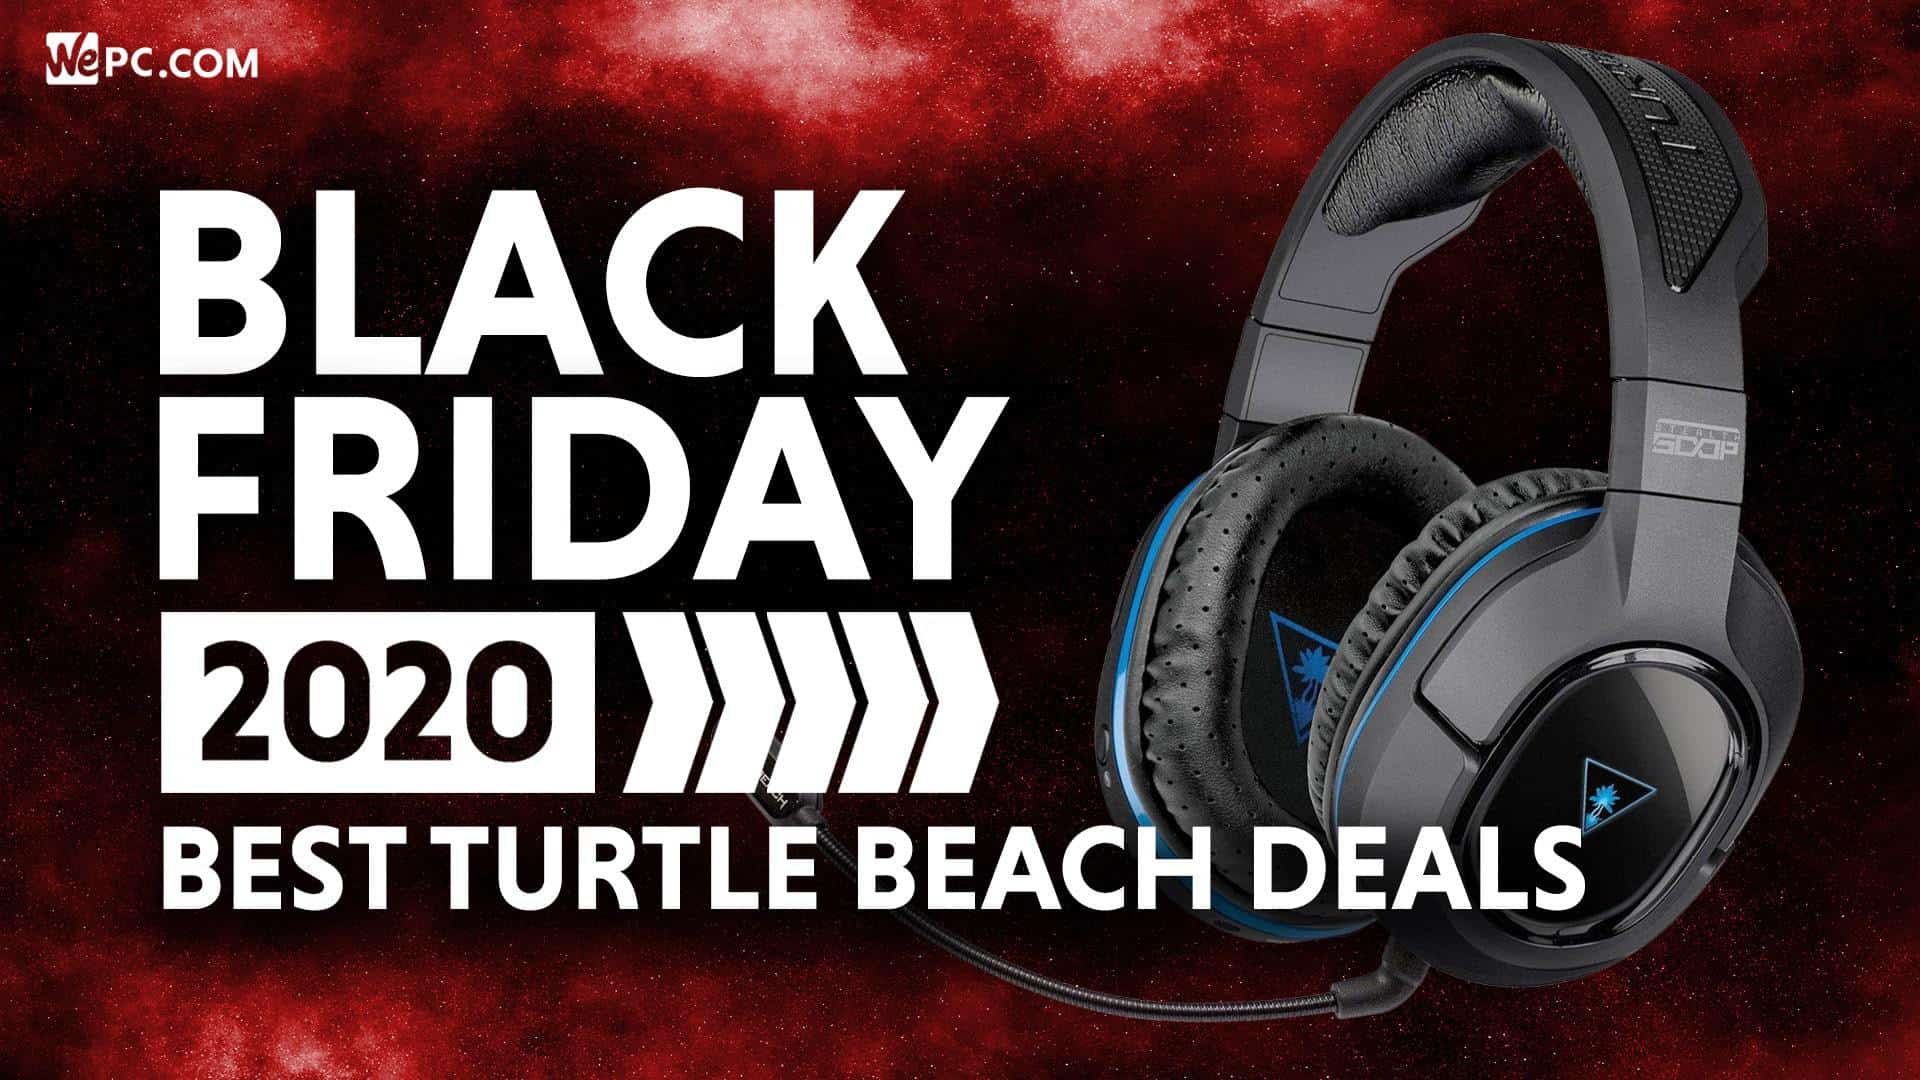 Turtle Beach Black Friday Deals 2020